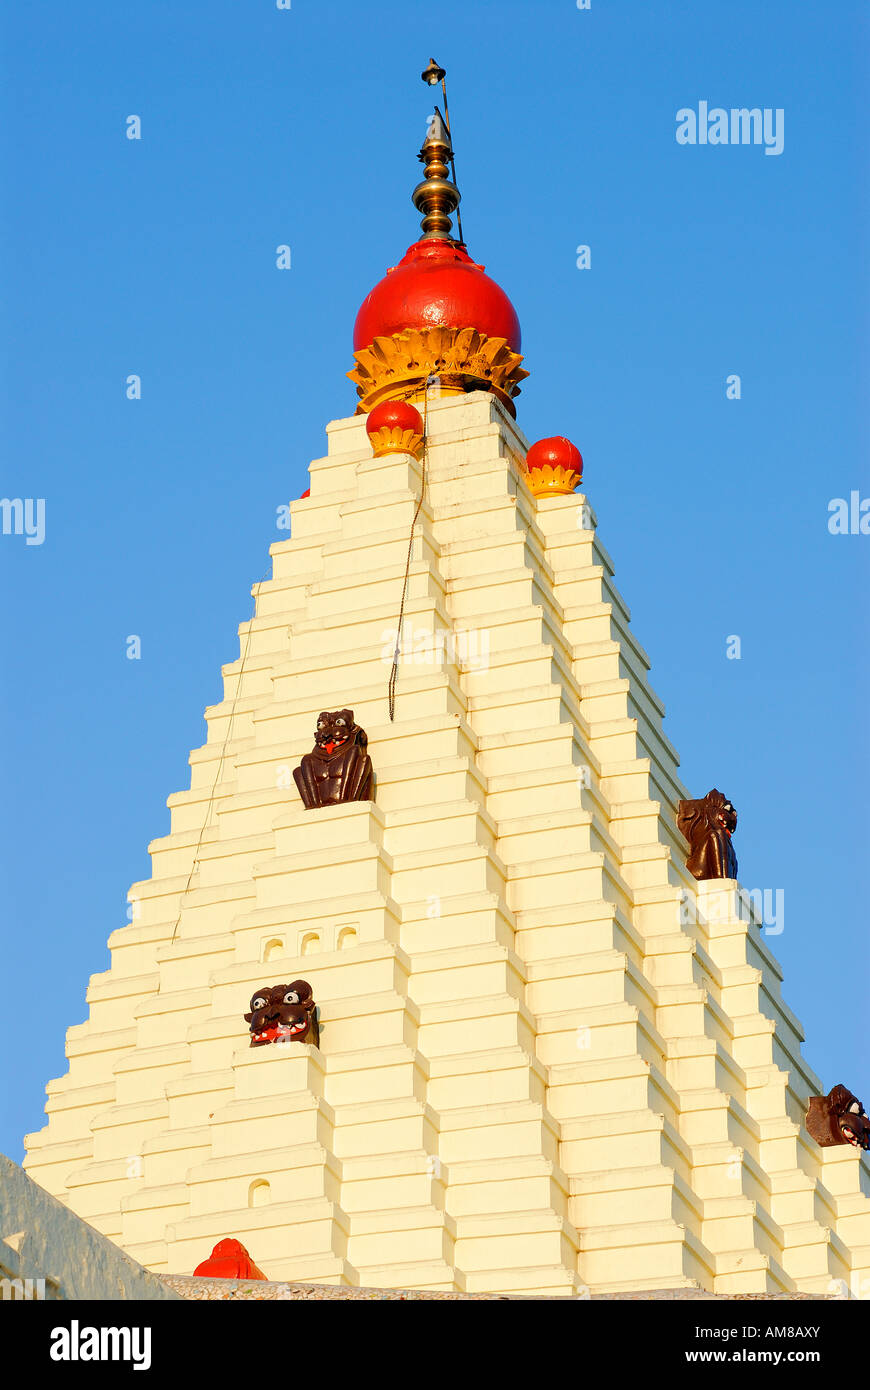 India, Maharashtra, Kolhapur, Mahalaxmi temple Stock Photo - Alamy